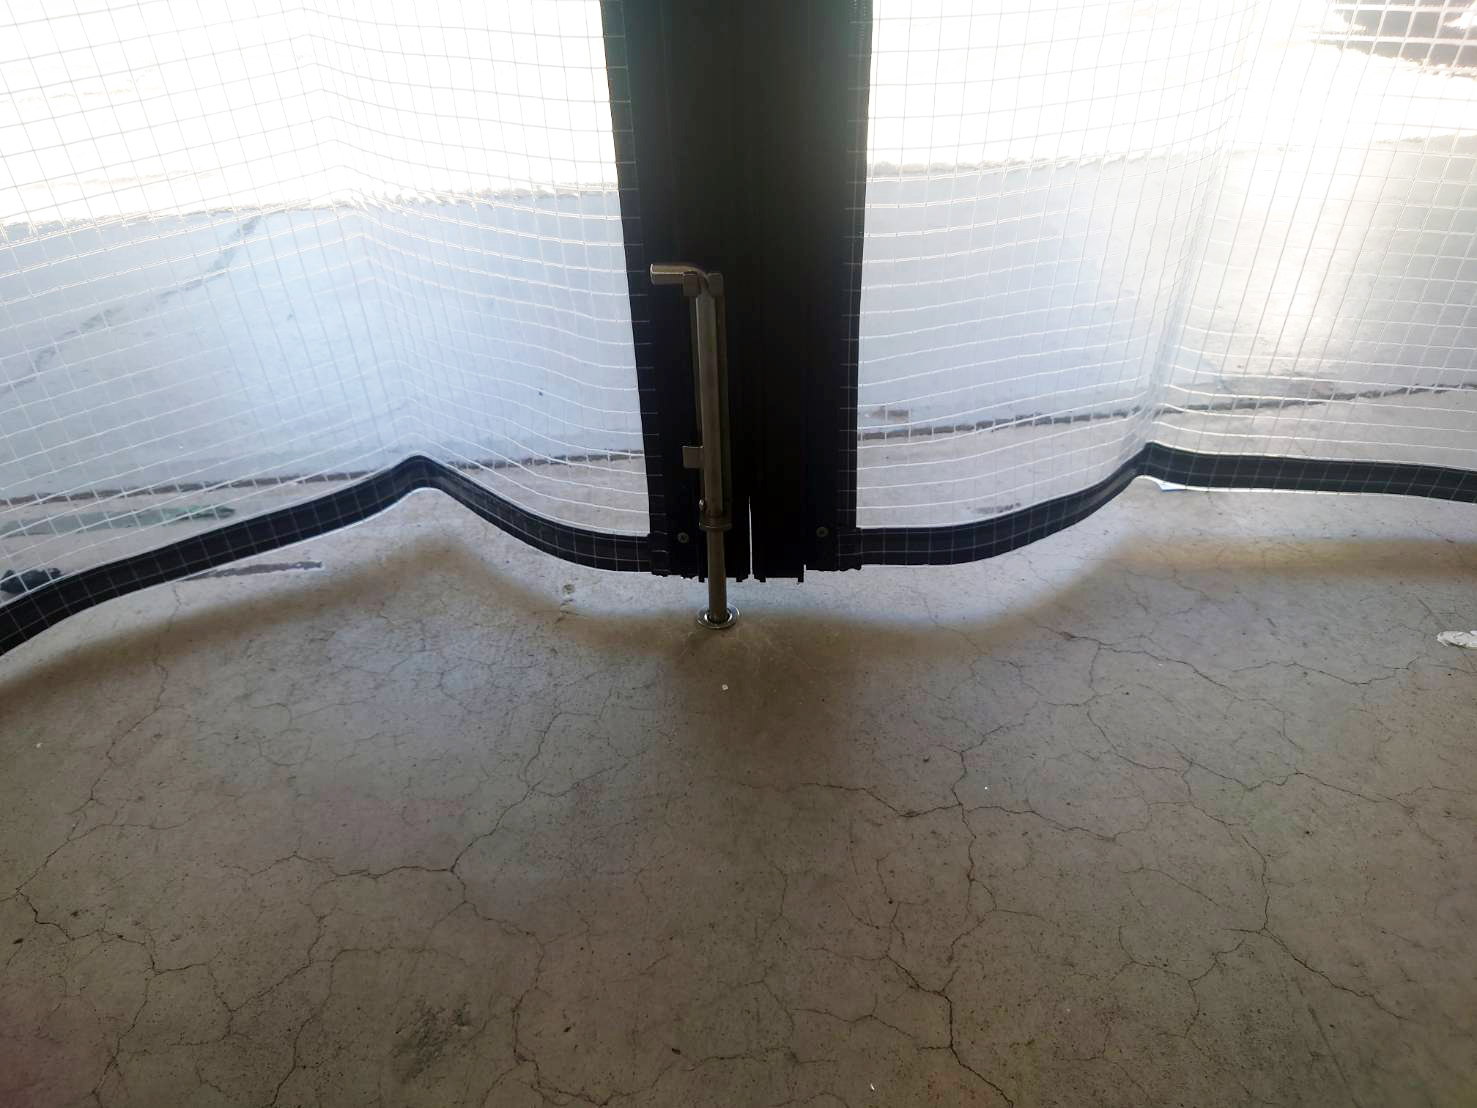 ビニールカーテンが風でバタつかないように間仕切りポールには落としピンを設置して、地面に固定できるようになっています